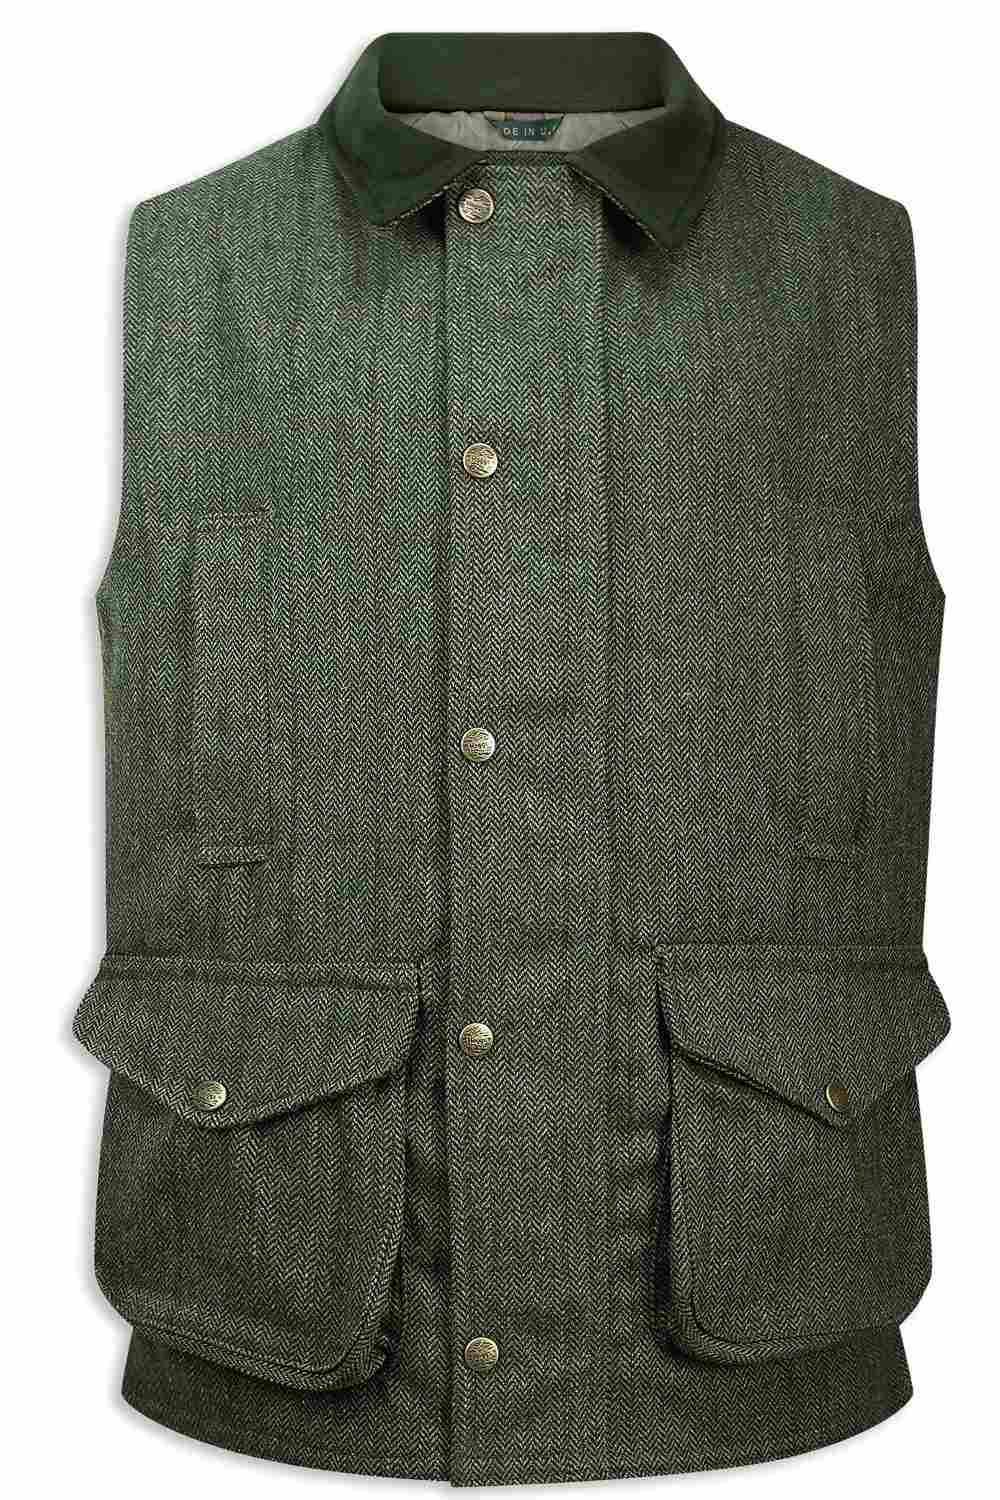 Hoggs of Fife Helmsdale Tweed Waistcoat | Green Herringbone Tweed